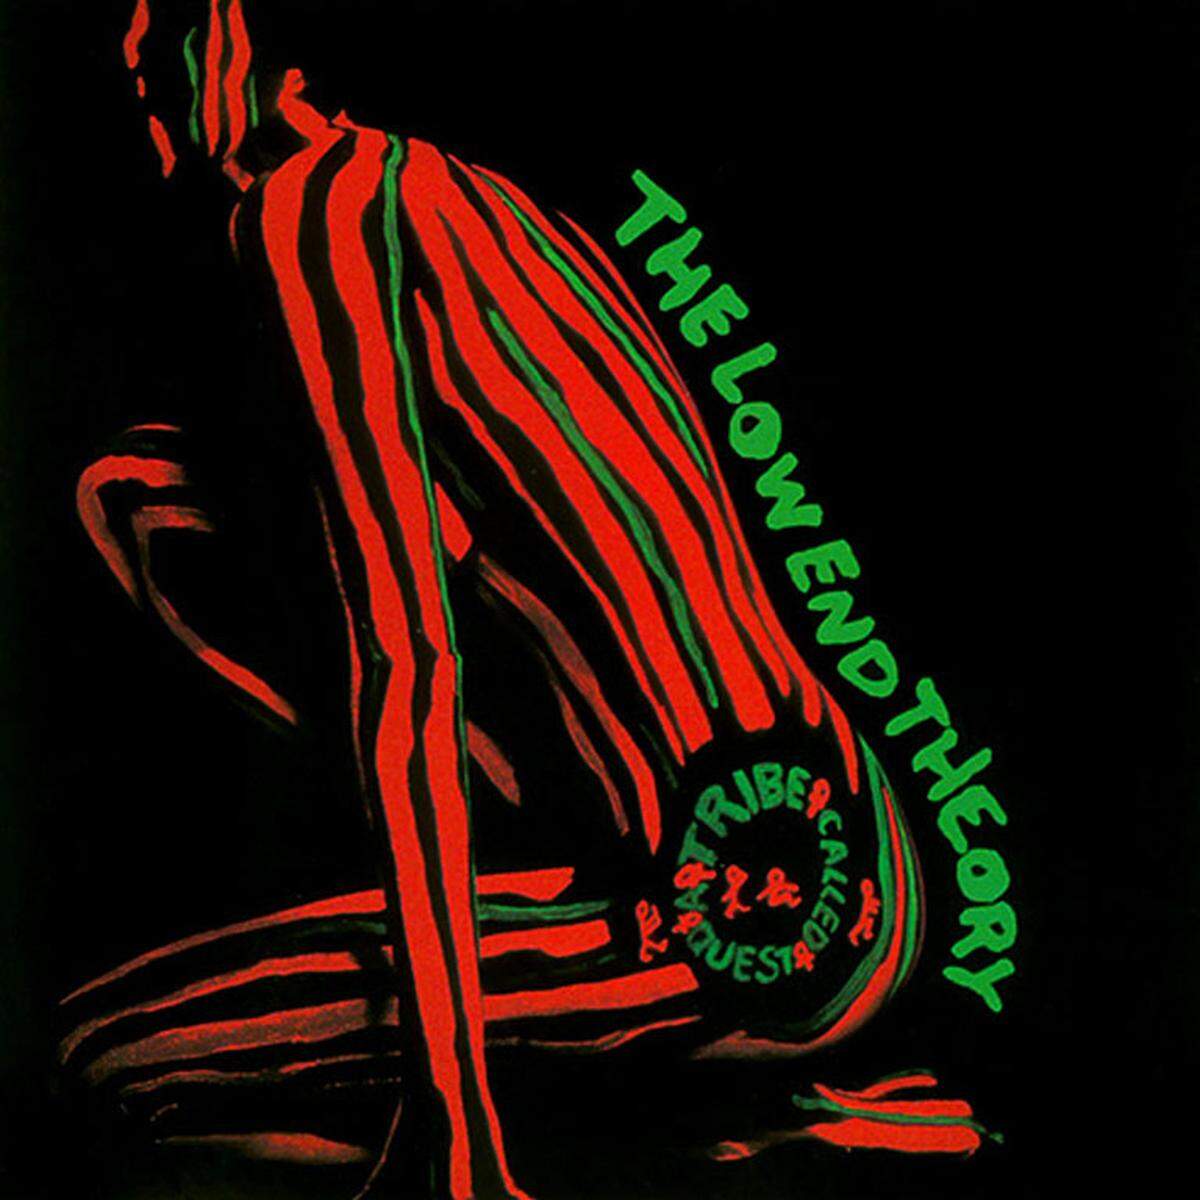 Das Hip-Hop-Kollektiv Native Tongues gehört zu den besten Bewegungen des Genres. Neben De La Soul sind vor allem Q-Tips A Tribe Called Quest hervorzuheben. Ihr Meisterstück: "The Low End Theory" (1991).